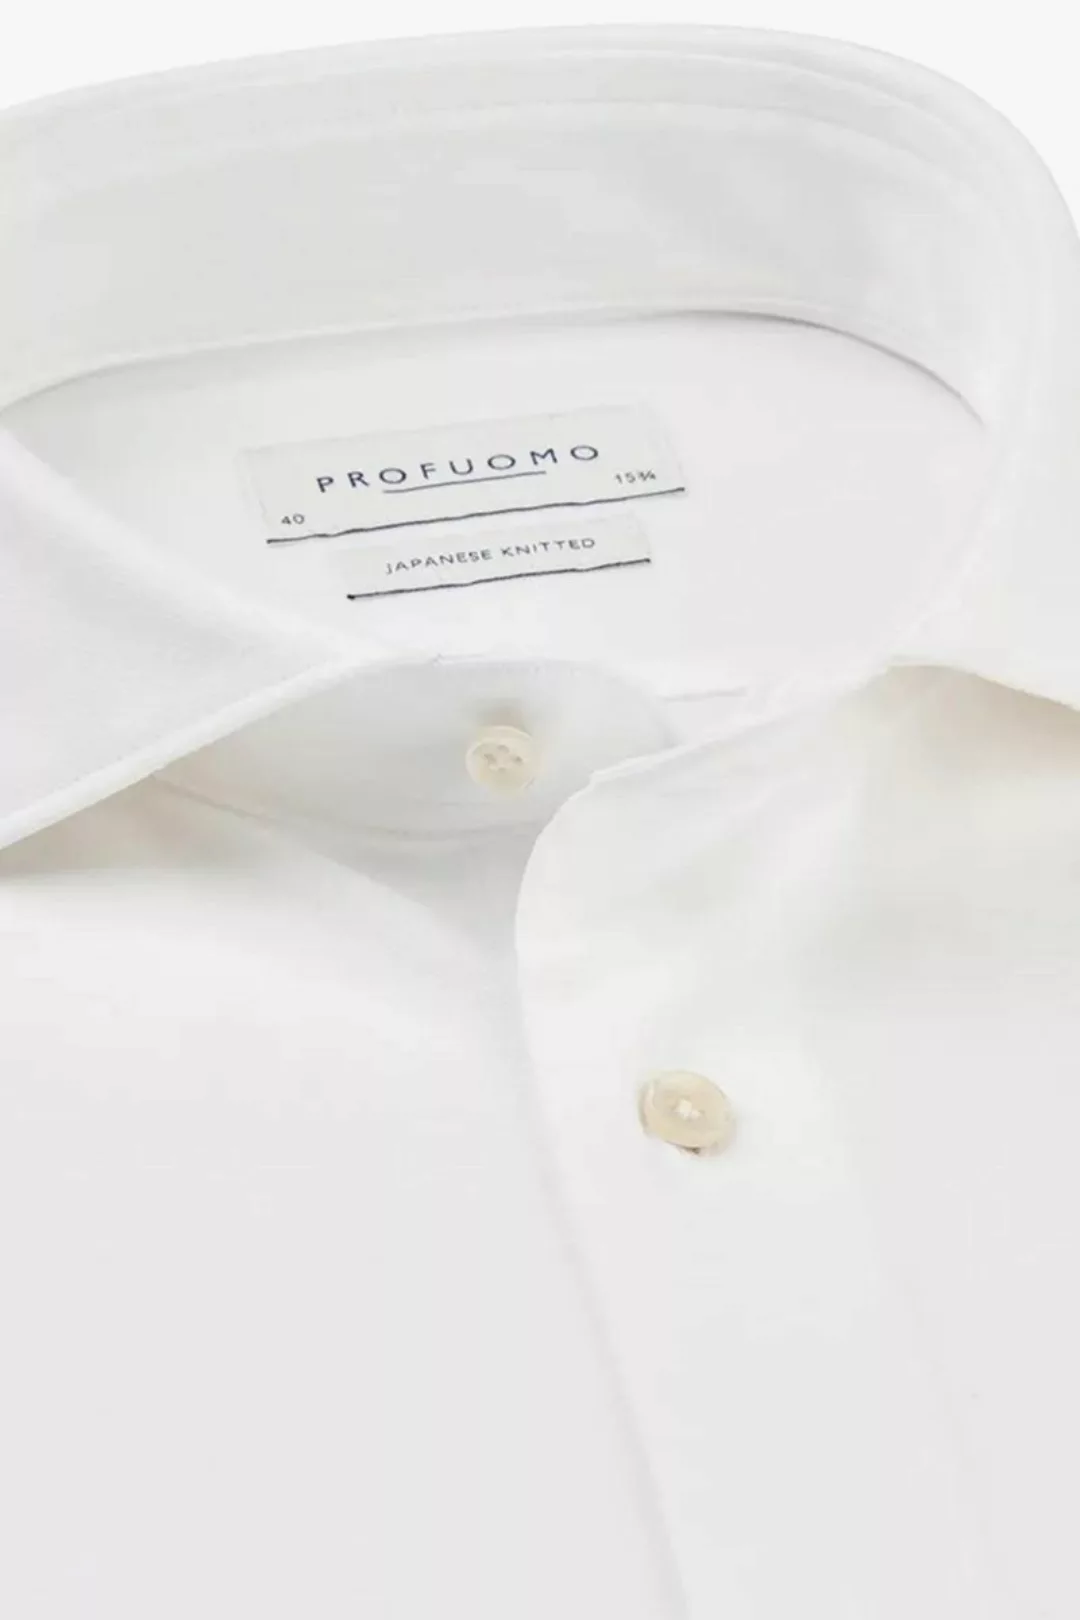 Profuomo Hemd Japanese Knitted Weiß - Größe 41 günstig online kaufen